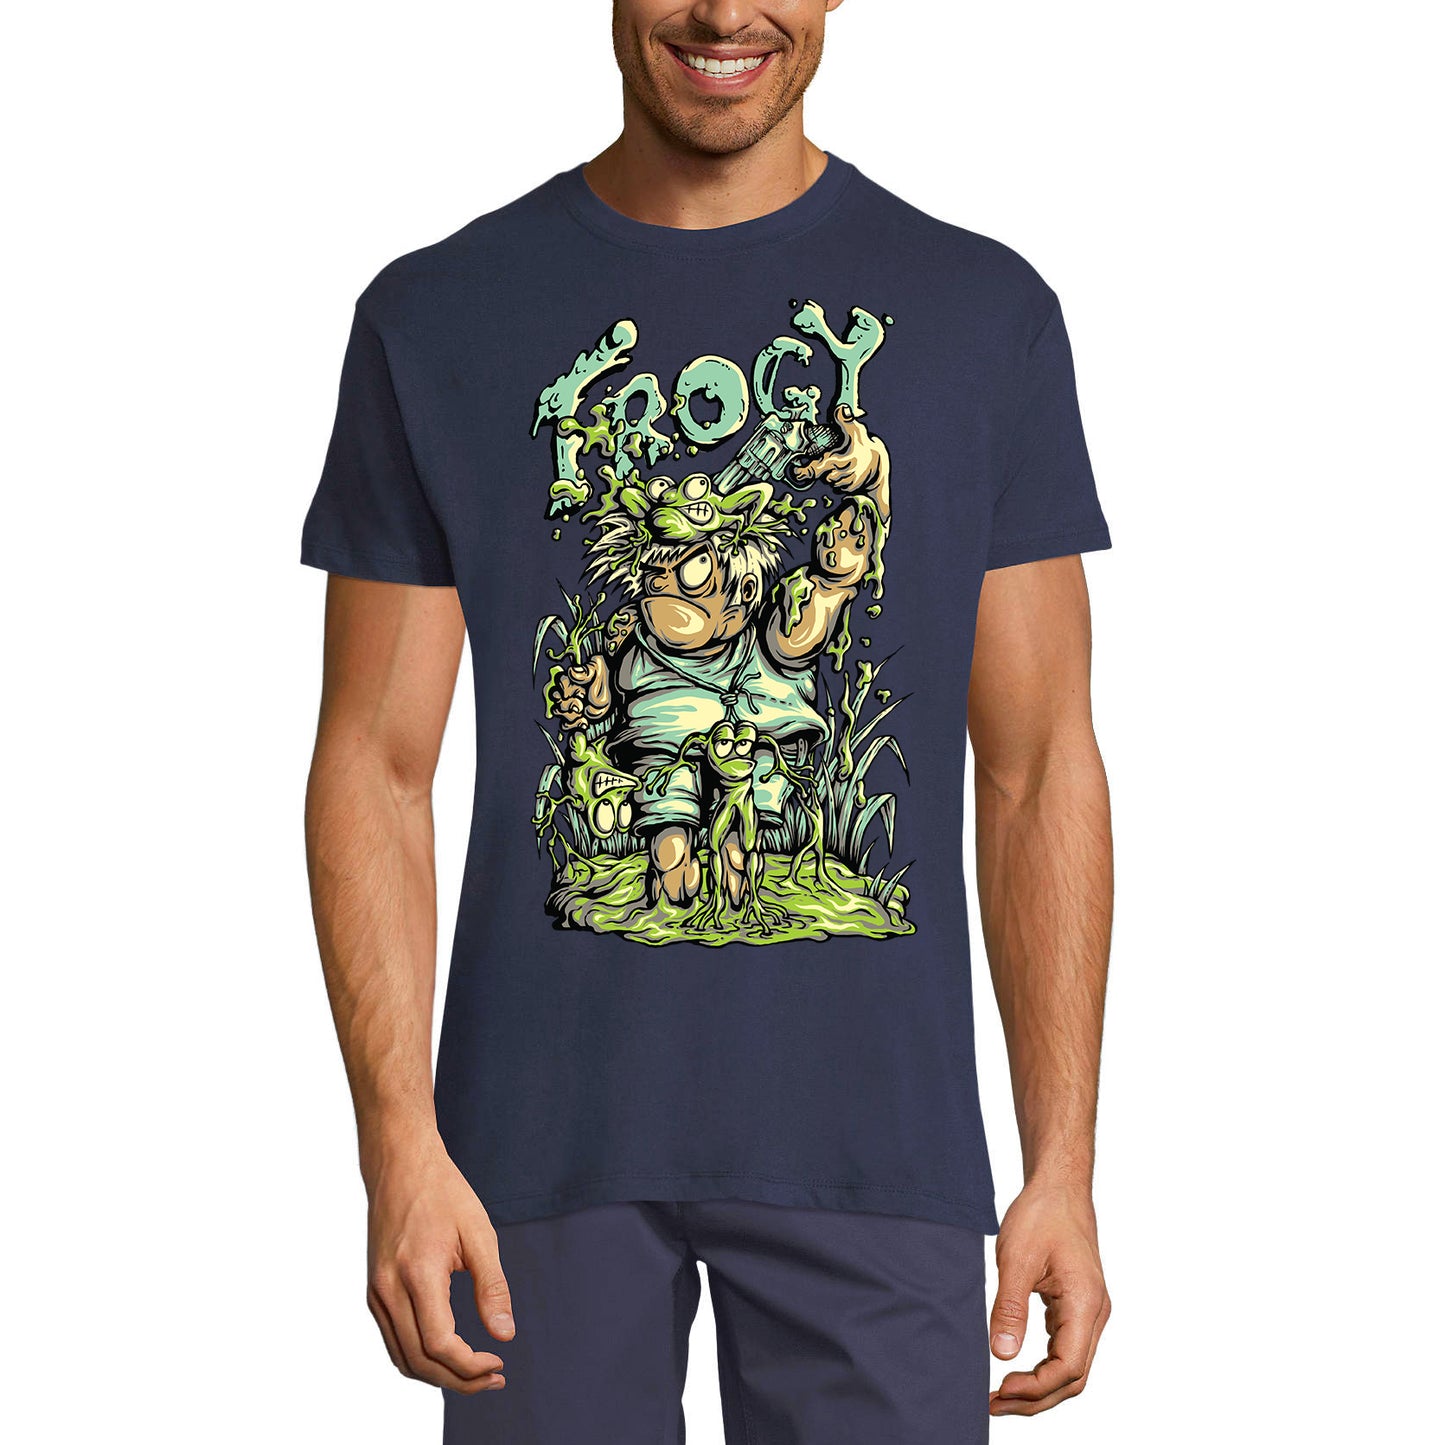 ULTRABASIC Men's Graphic T-Shirt Frogy Frog Hunter - Funny Joke Shirt for Men